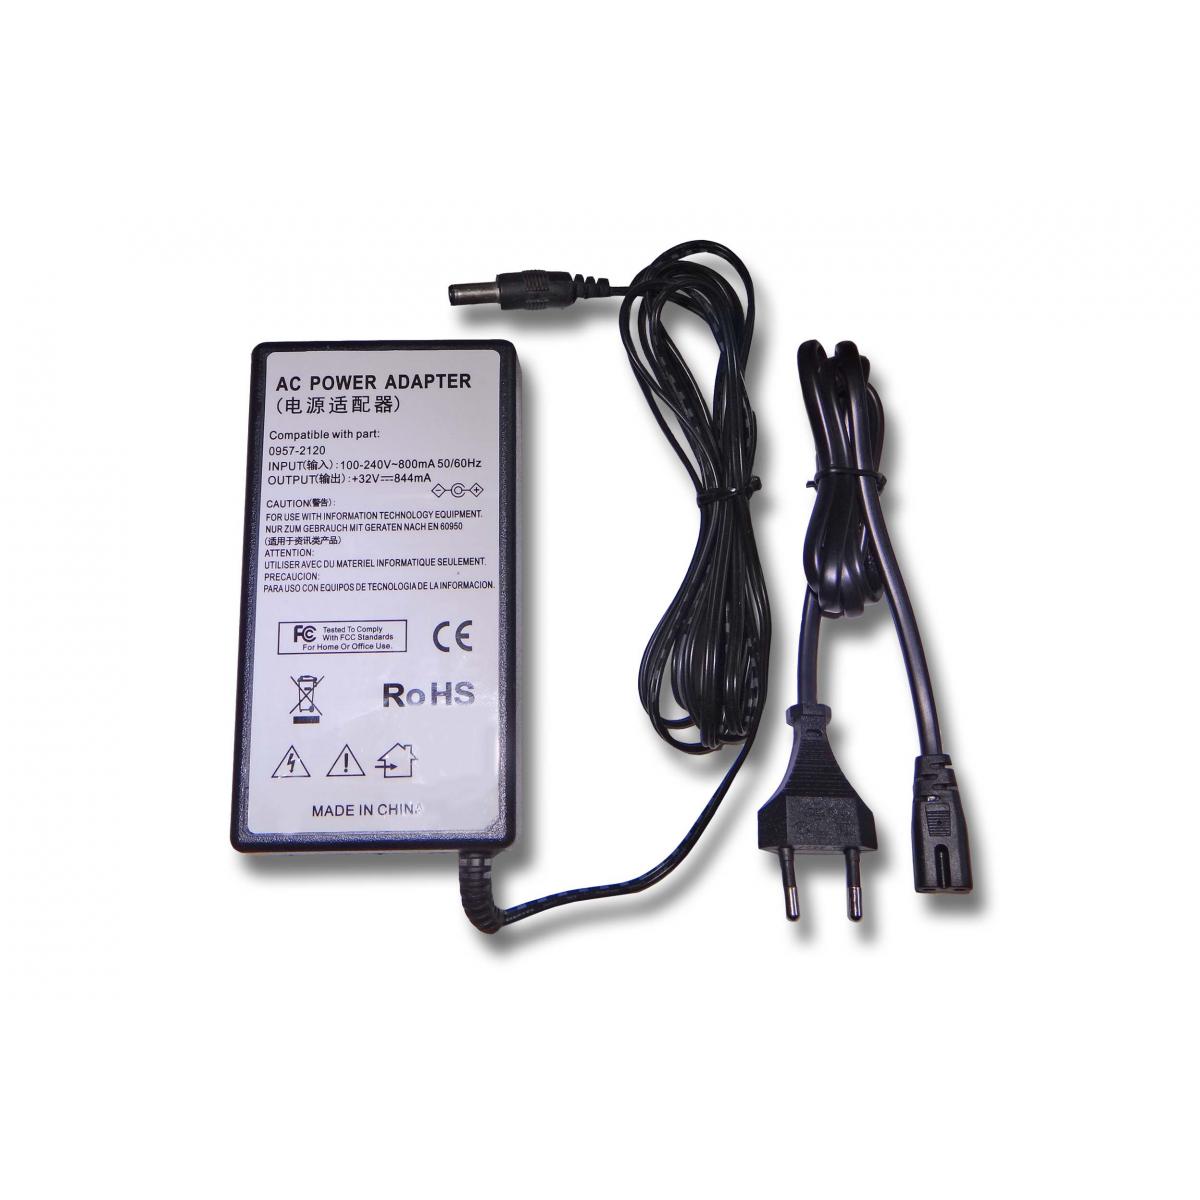 Vhbw - vhbw Imprimante Adaptateur bloc d'alimentation Câble d'alimentation Chargeur compatible avec HP Photosmart A710, A716, A717, A826 imprimante - 0.844A - Accessoires alimentation